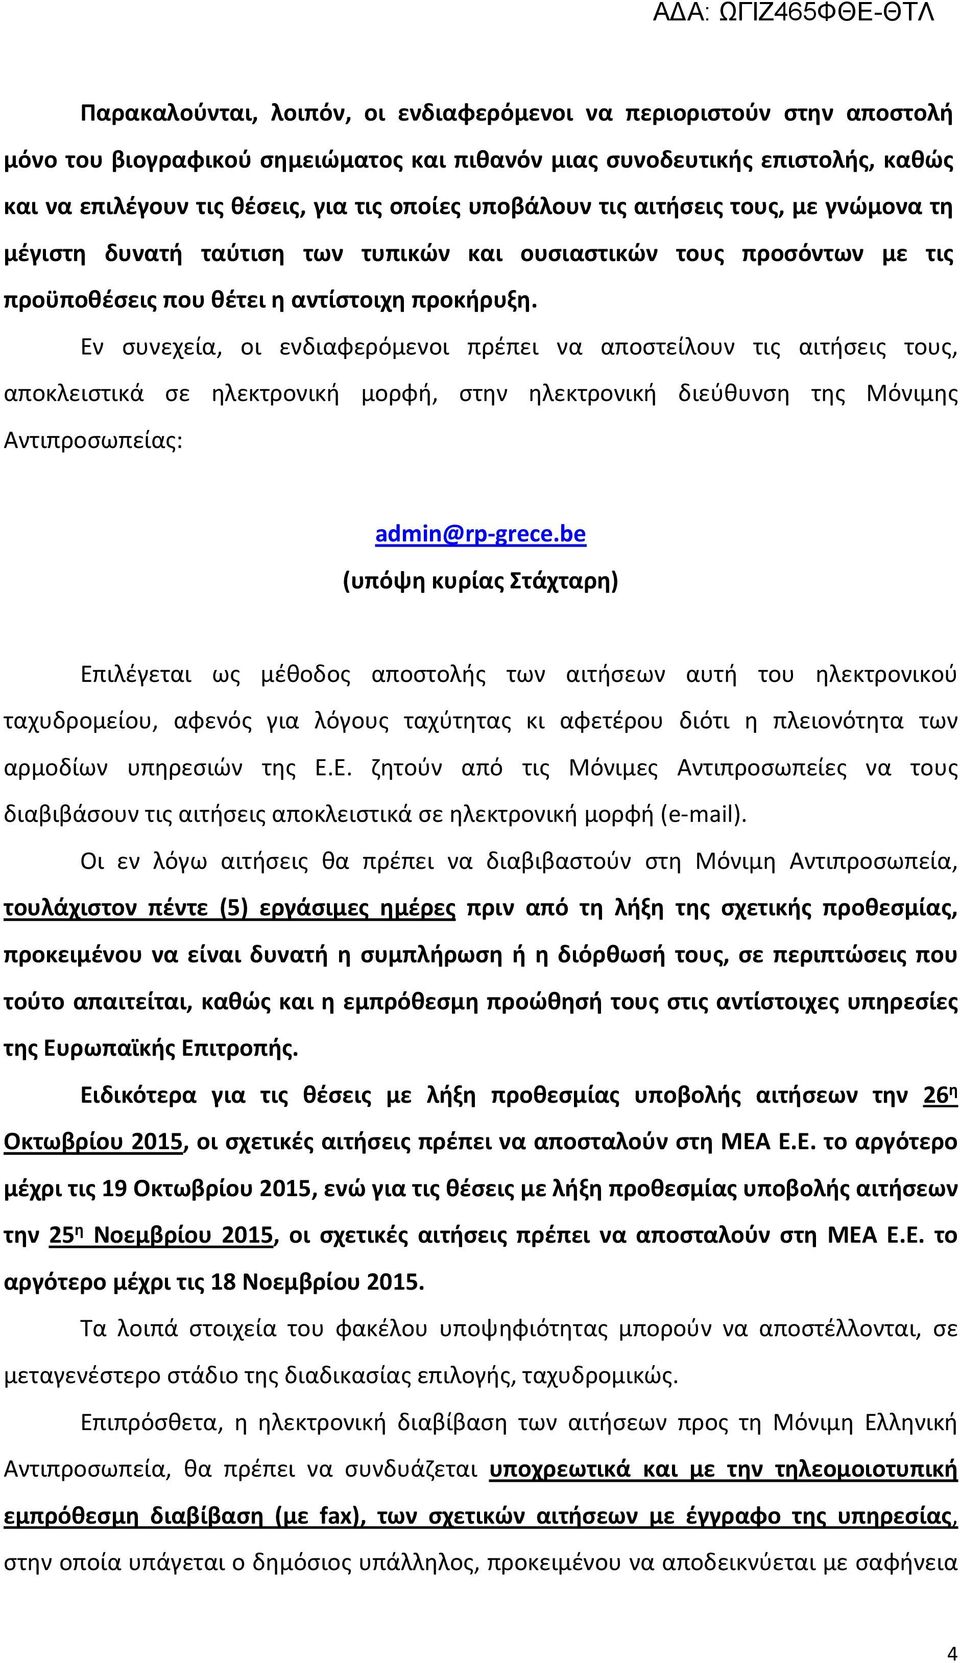 Εν συνεχεία, οι ενδιαφερόμενοι πρέπει να αποστείλουν τις αιτήσεις τους, αποκλειστικά σε ηλεκτρονική μορφή, στην ηλεκτρονική διεύθυνση της Μόνιμης Αντιπροσωπείας: admin@rp-grece.